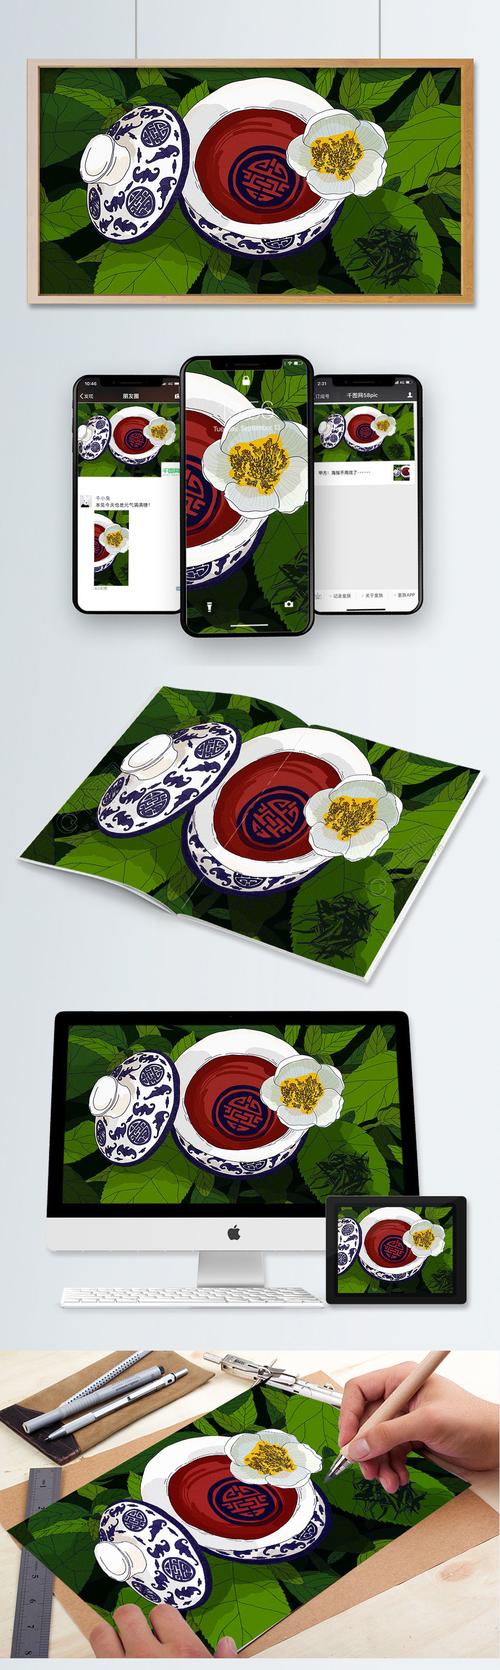 原创青花盖碗茶文化吃茶去手绘插画3年前发布